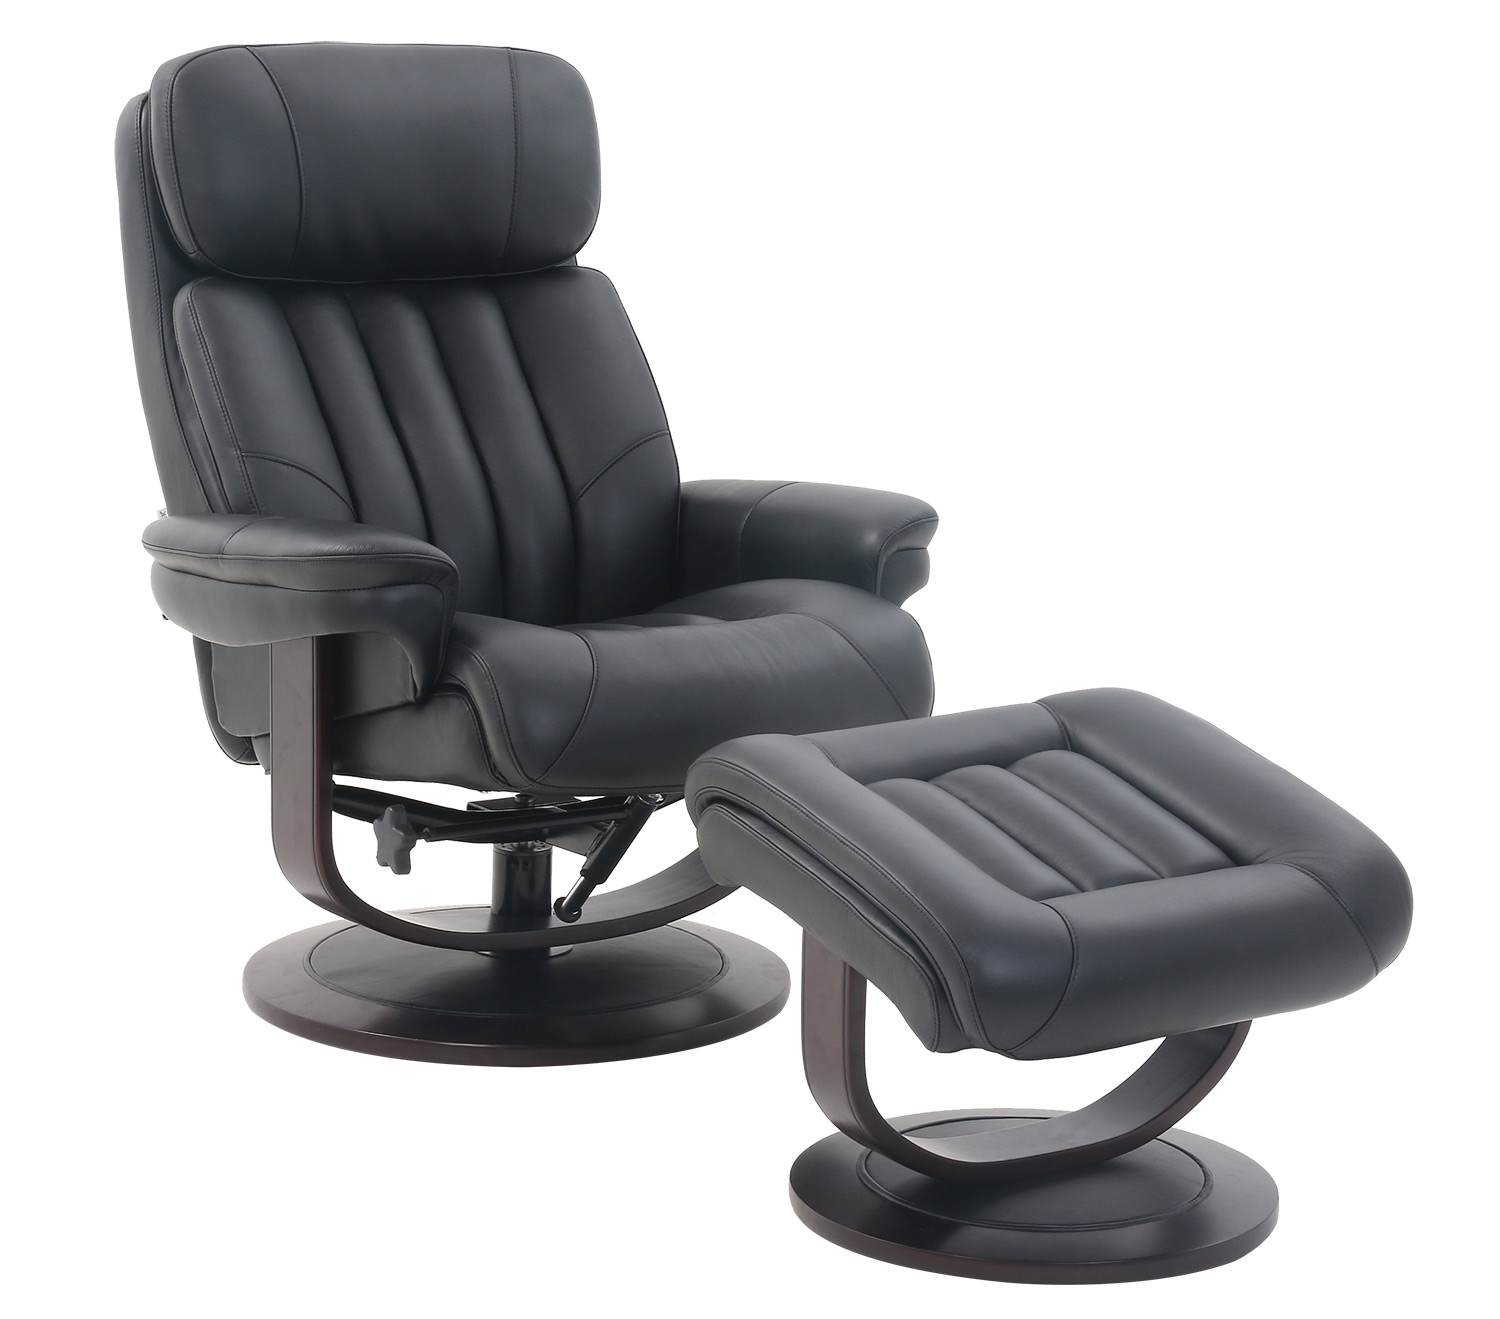 Barcalounger Oakleigh Pedestal Recliner Chair and Ottoman - Hilton Black/Leather match